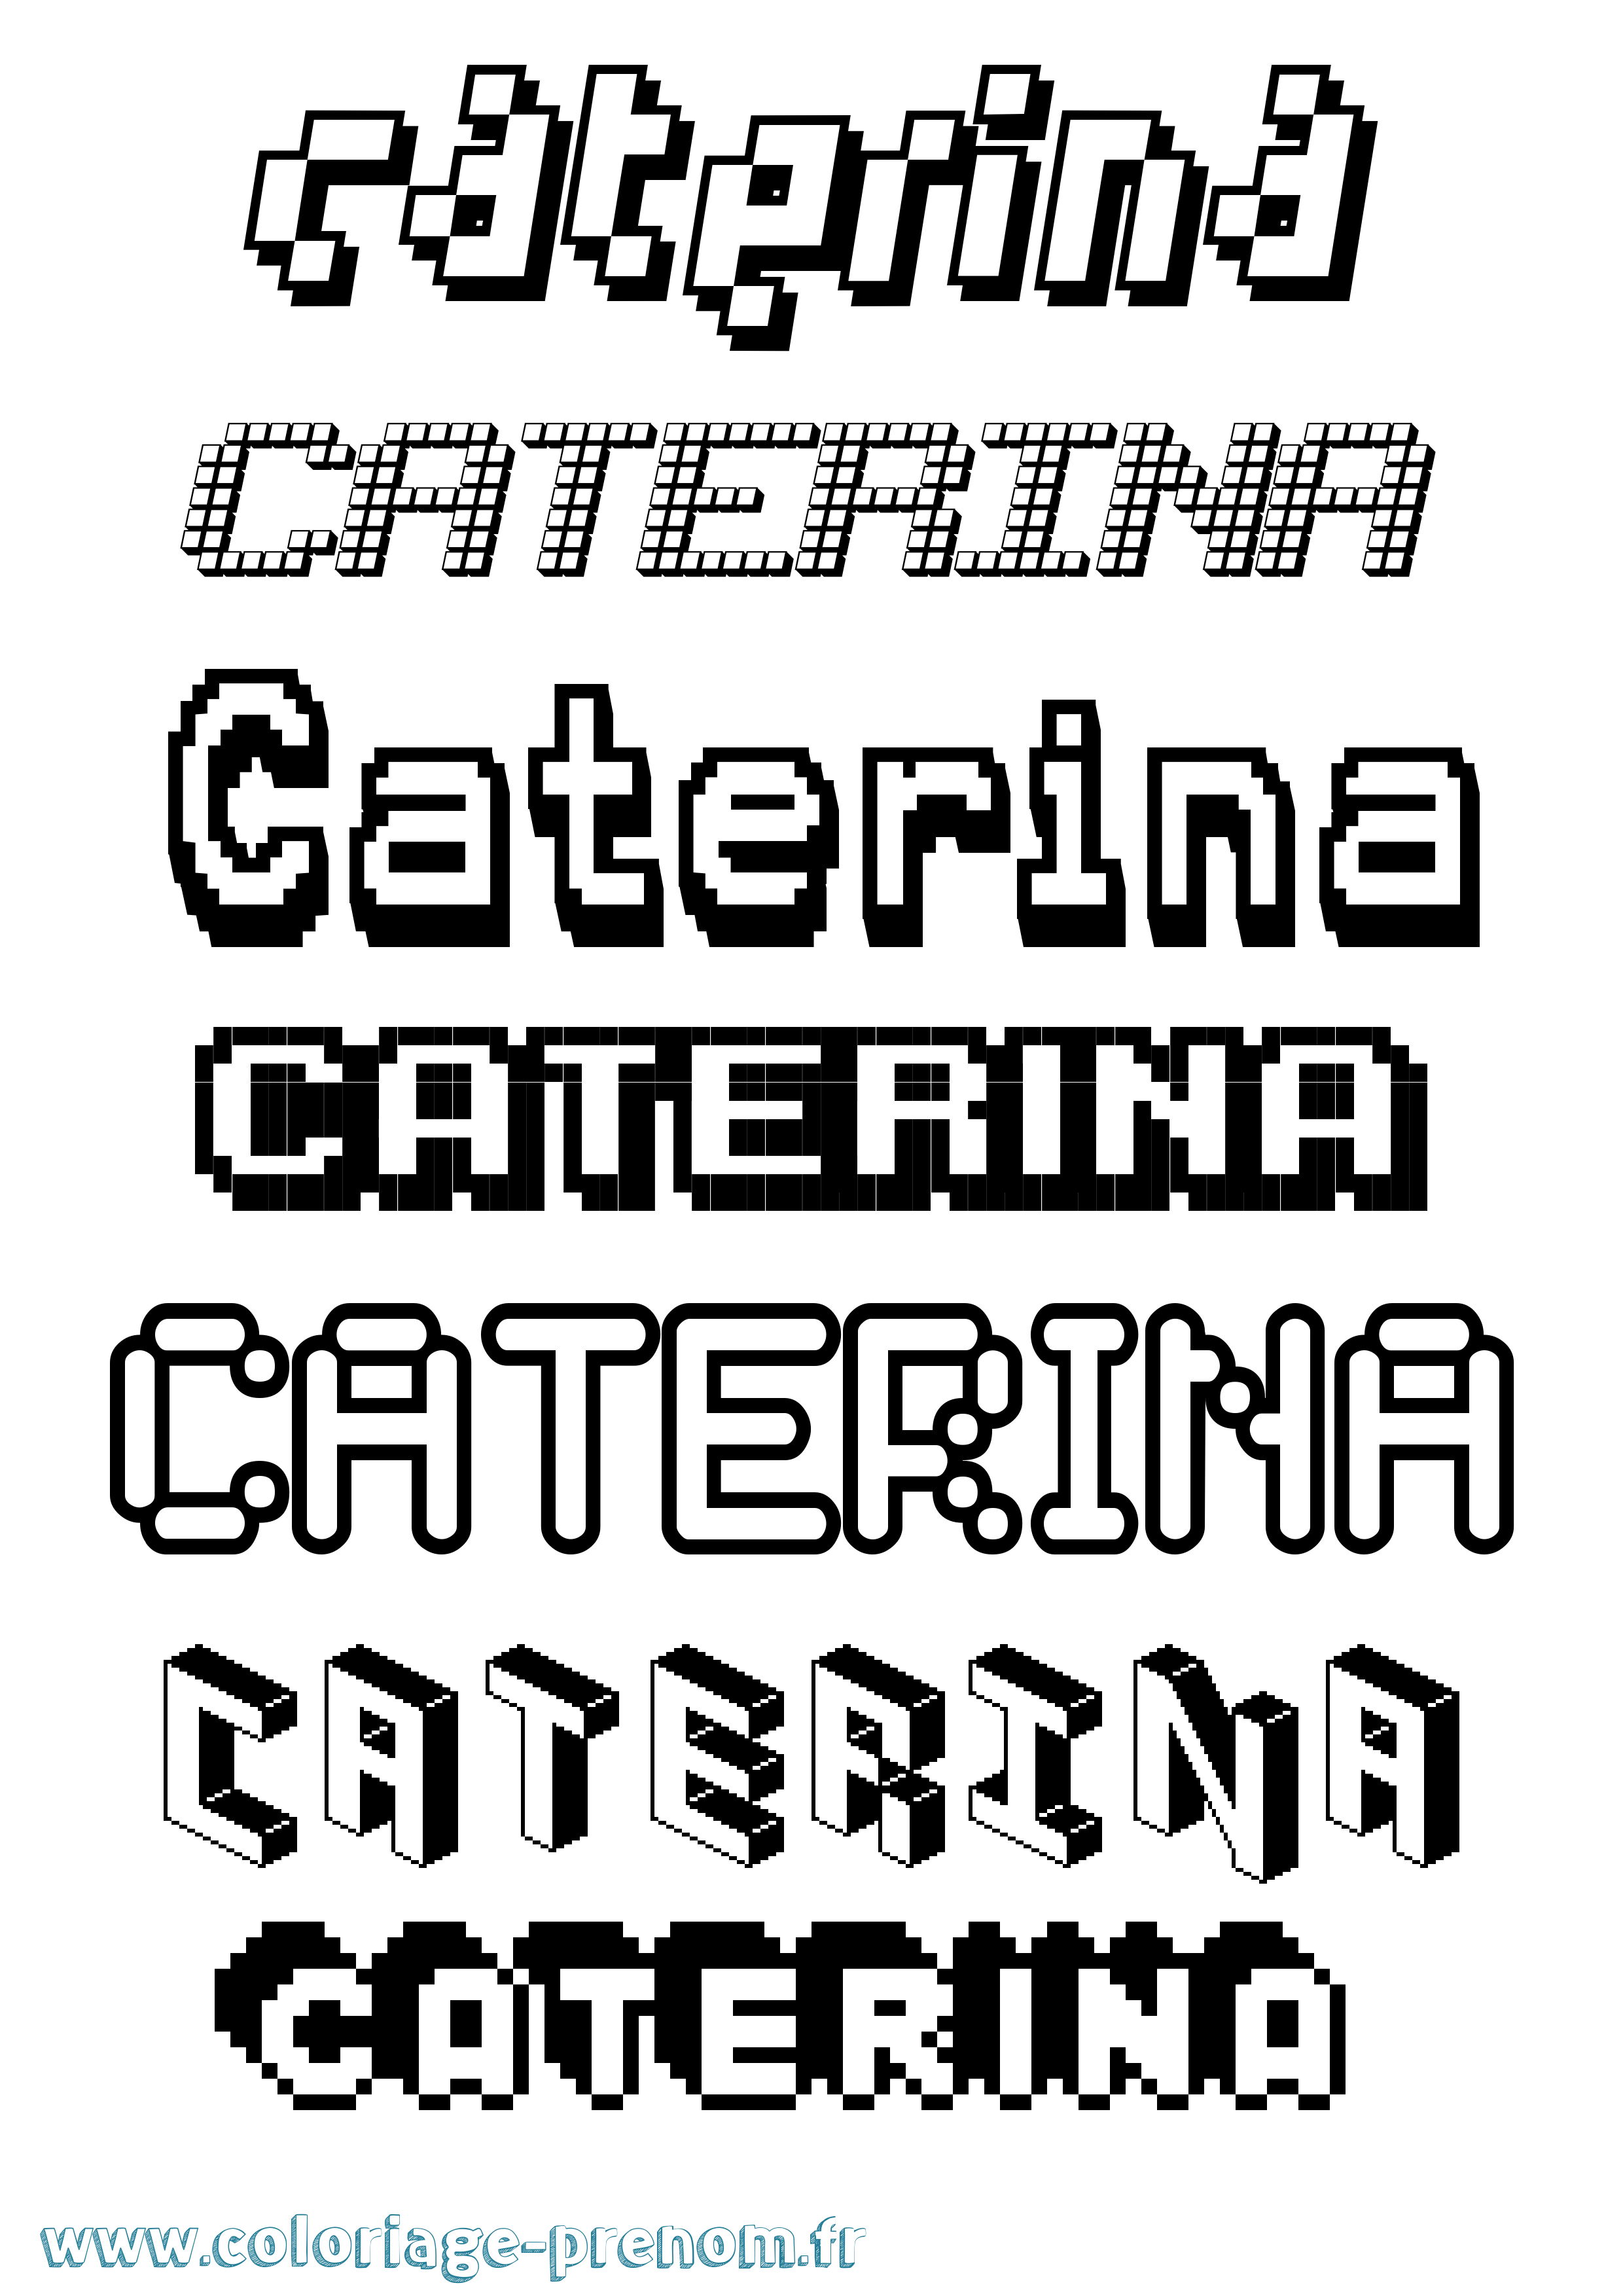 Coloriage prénom Caterina Pixel